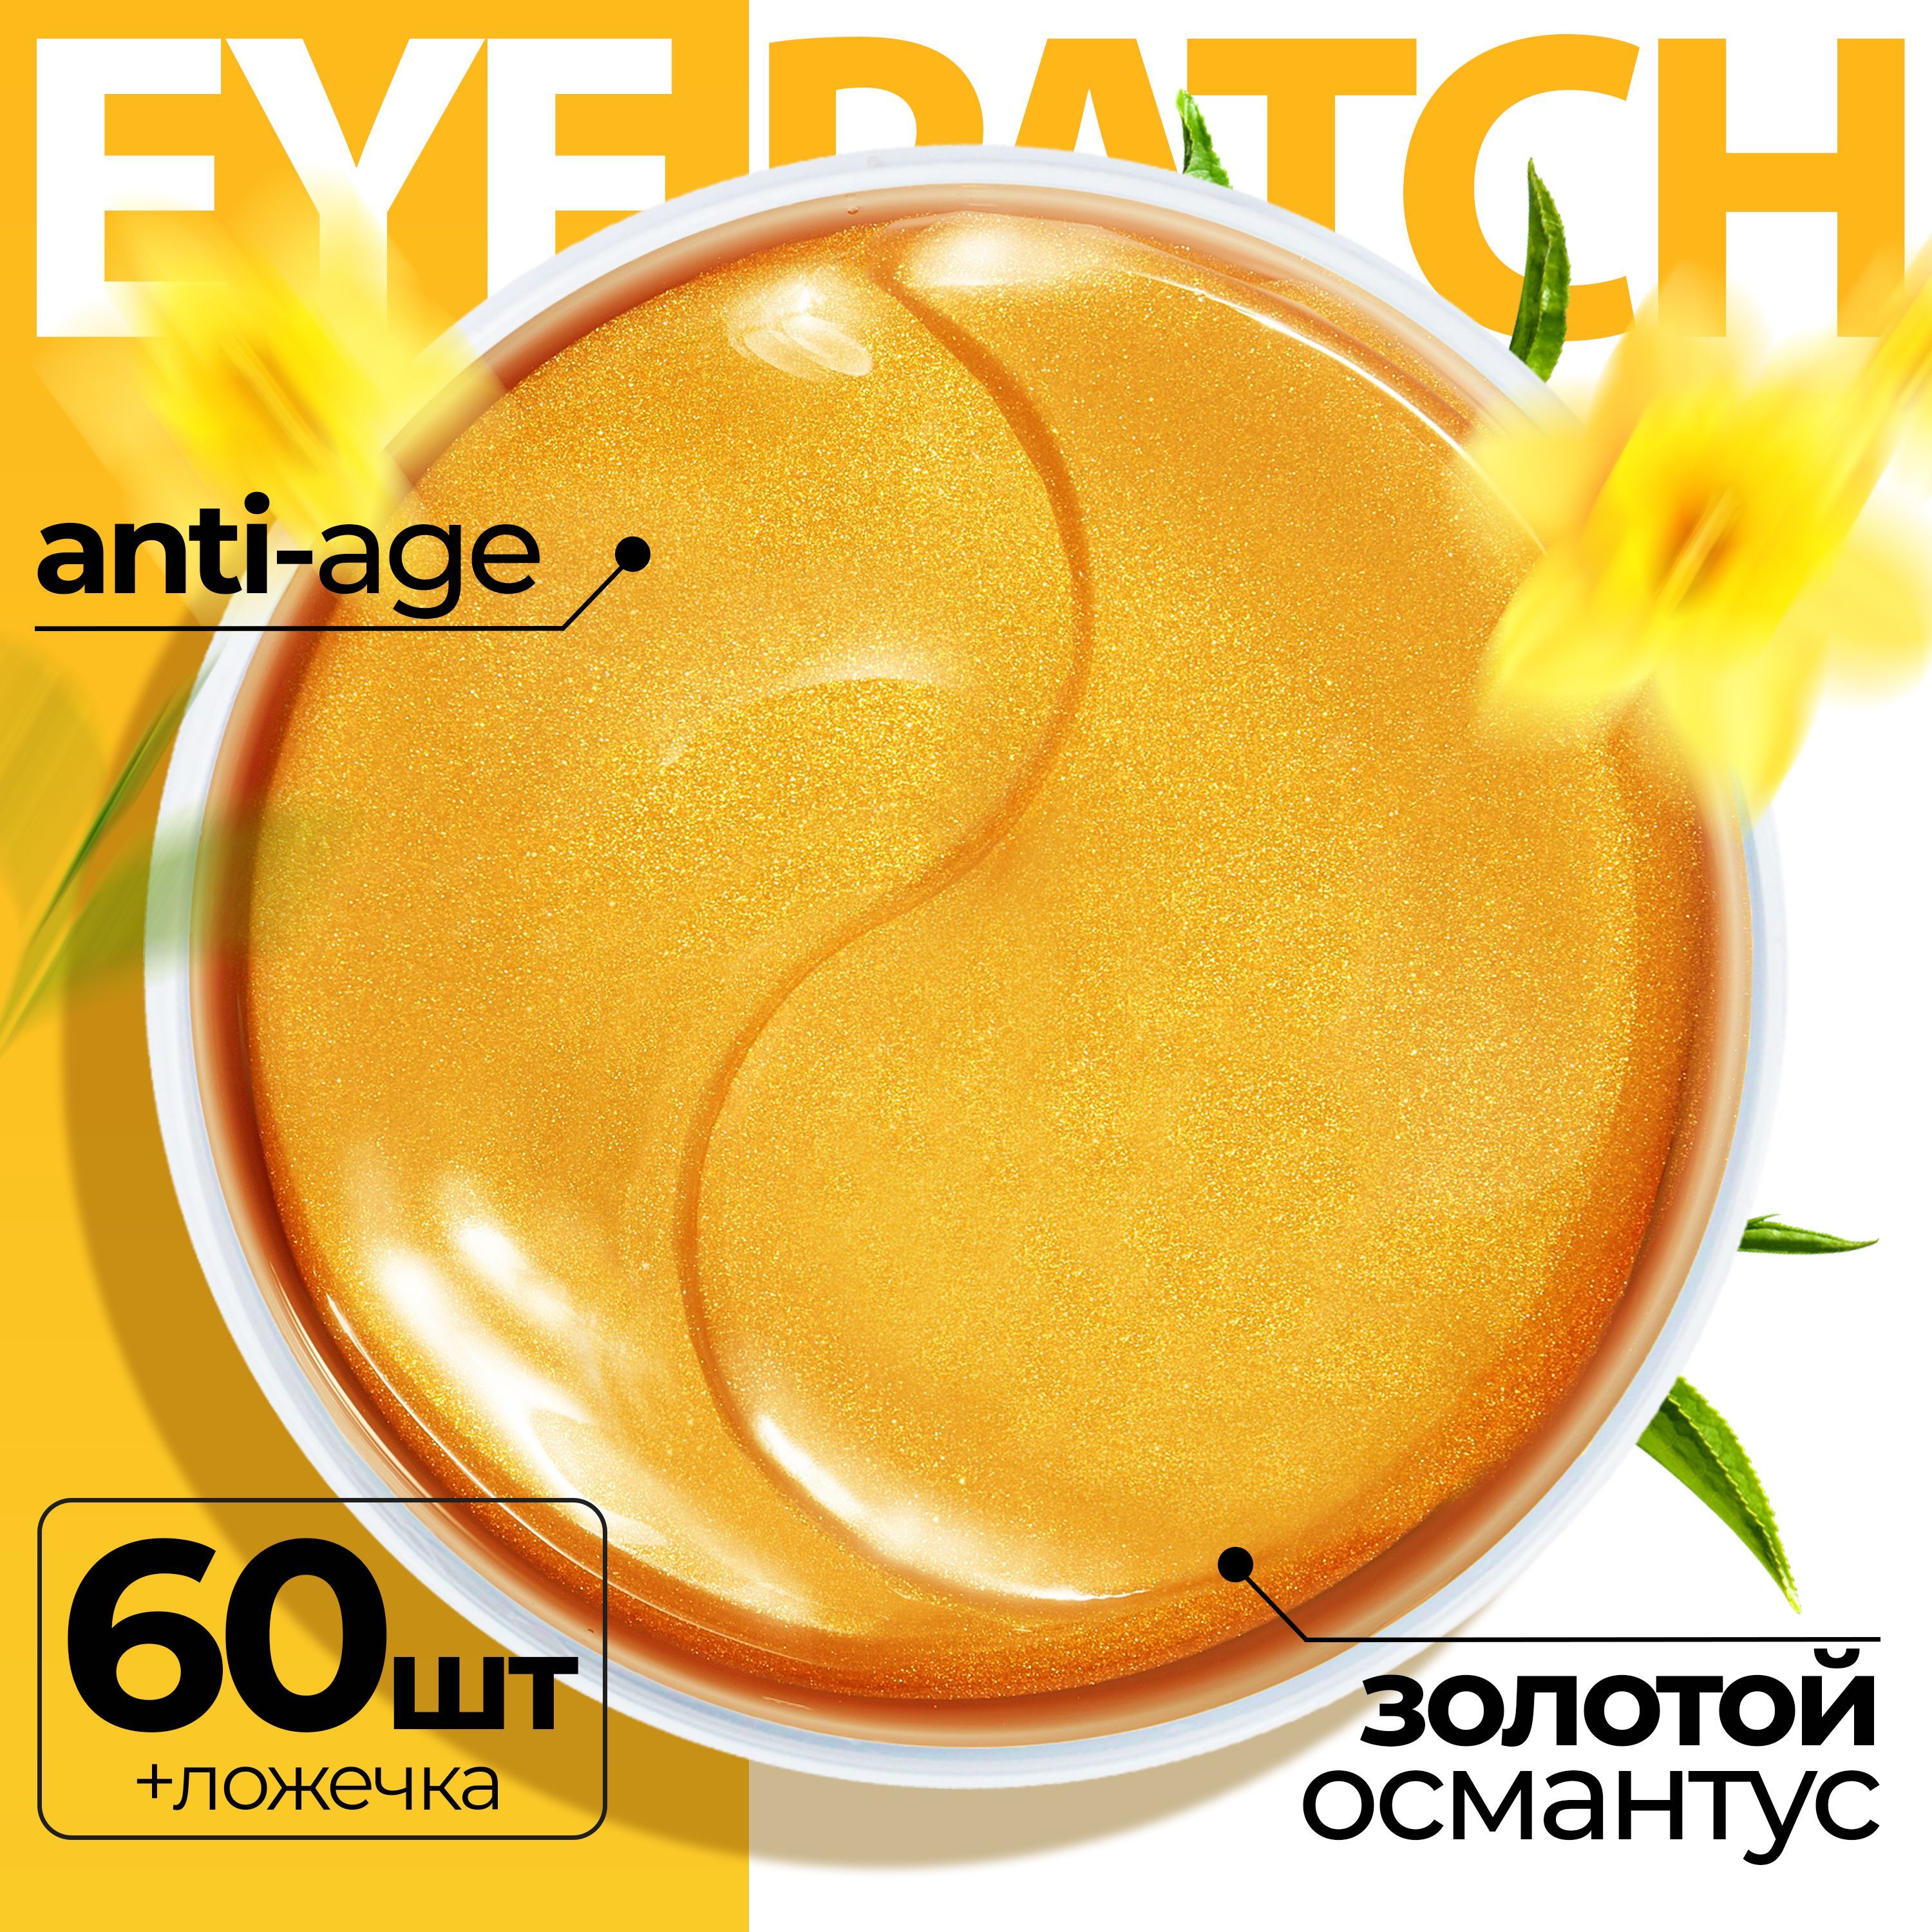 Патчи Fabrik cosmetology для кожи вокруг глаз гидрогелевые с золотым османтусом 60 шт super beezy патчи для глаз гидрогелевые против отеков и темных кругов 3rd eye patch